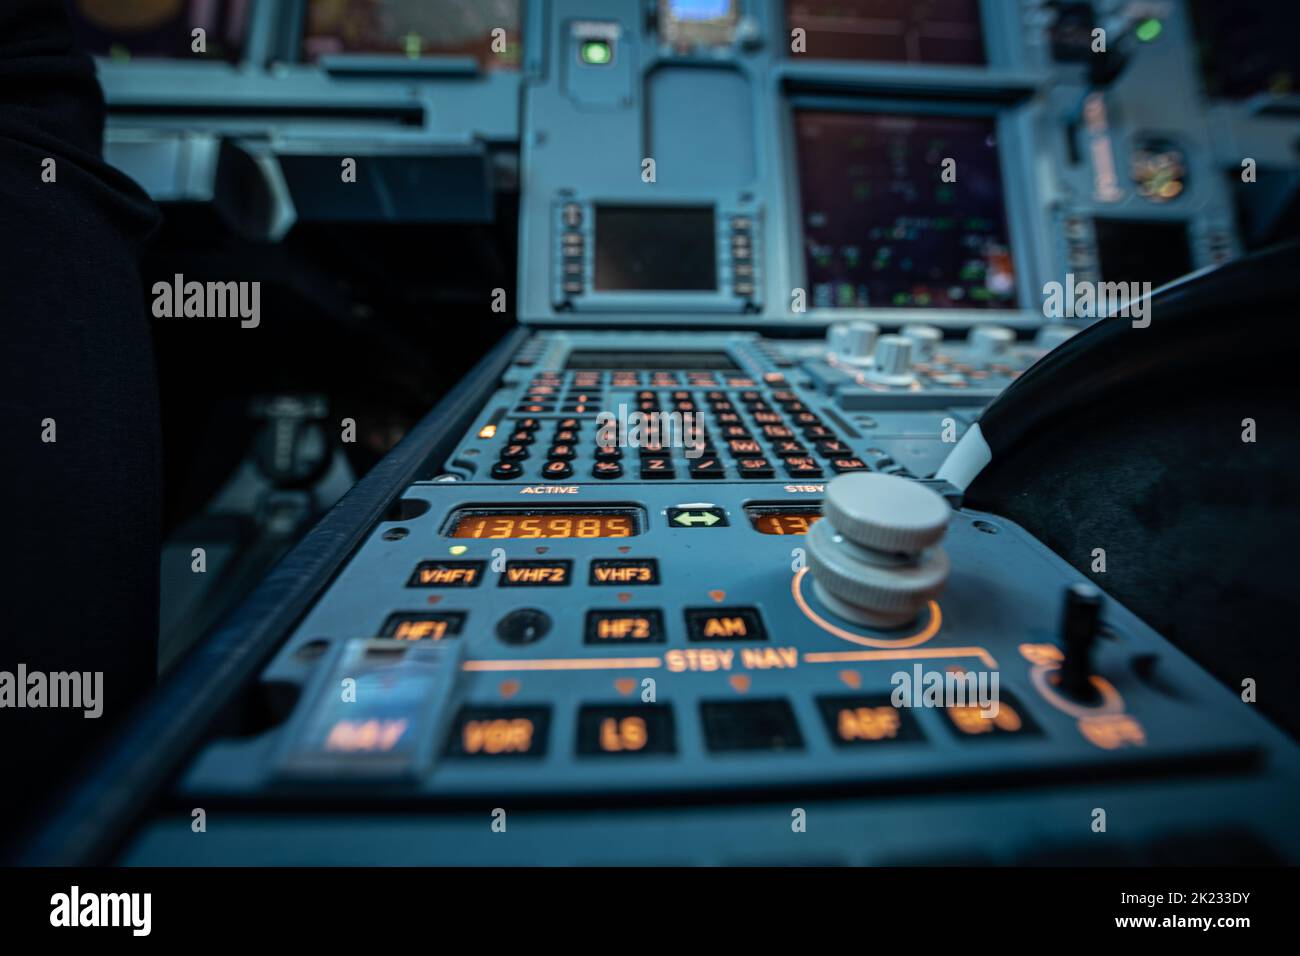 Airbus-Flugdeck mit Instrumentenbrett und Blick auf den Flight Management Computer und CPDLC-Display.Airbus-Flugdeck mit Instrumentenbrett geschossen Stockfoto